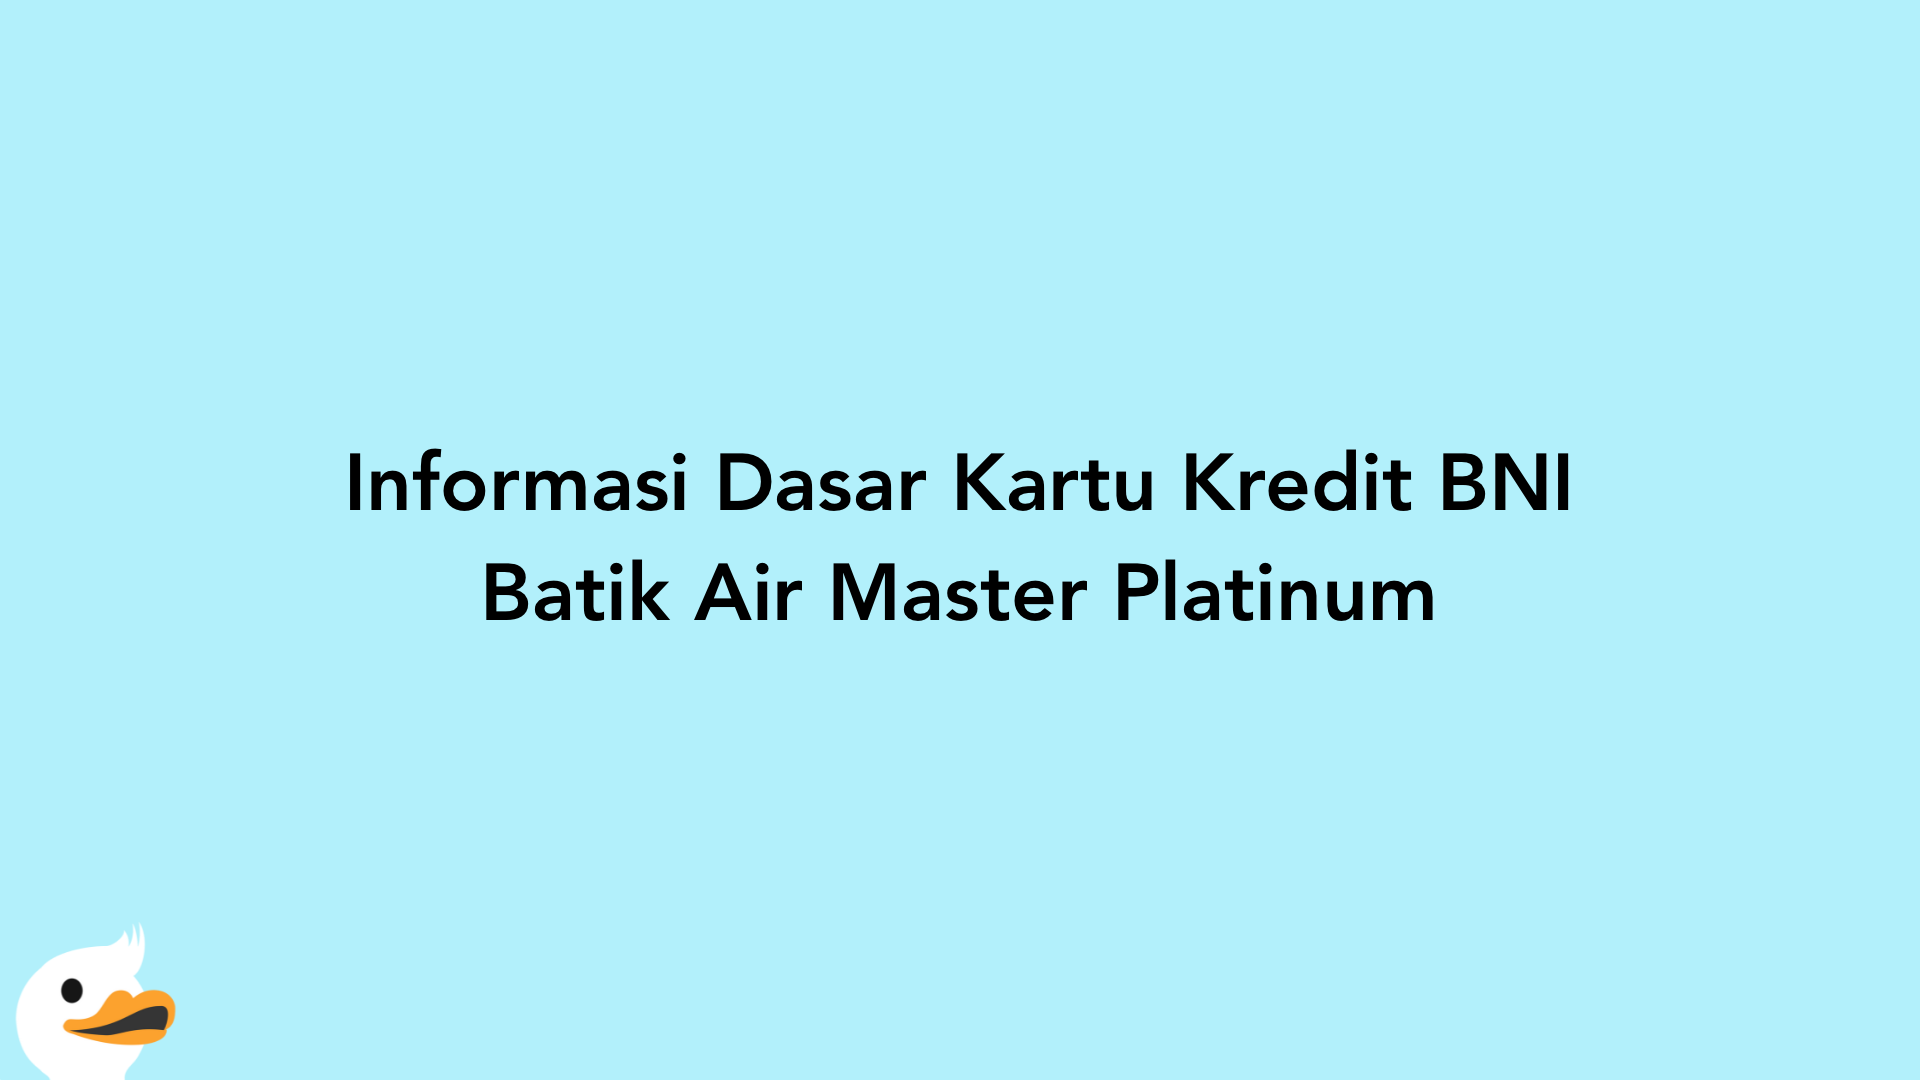 Informasi Dasar Kartu Kredit BNI Batik Air Master Platinum